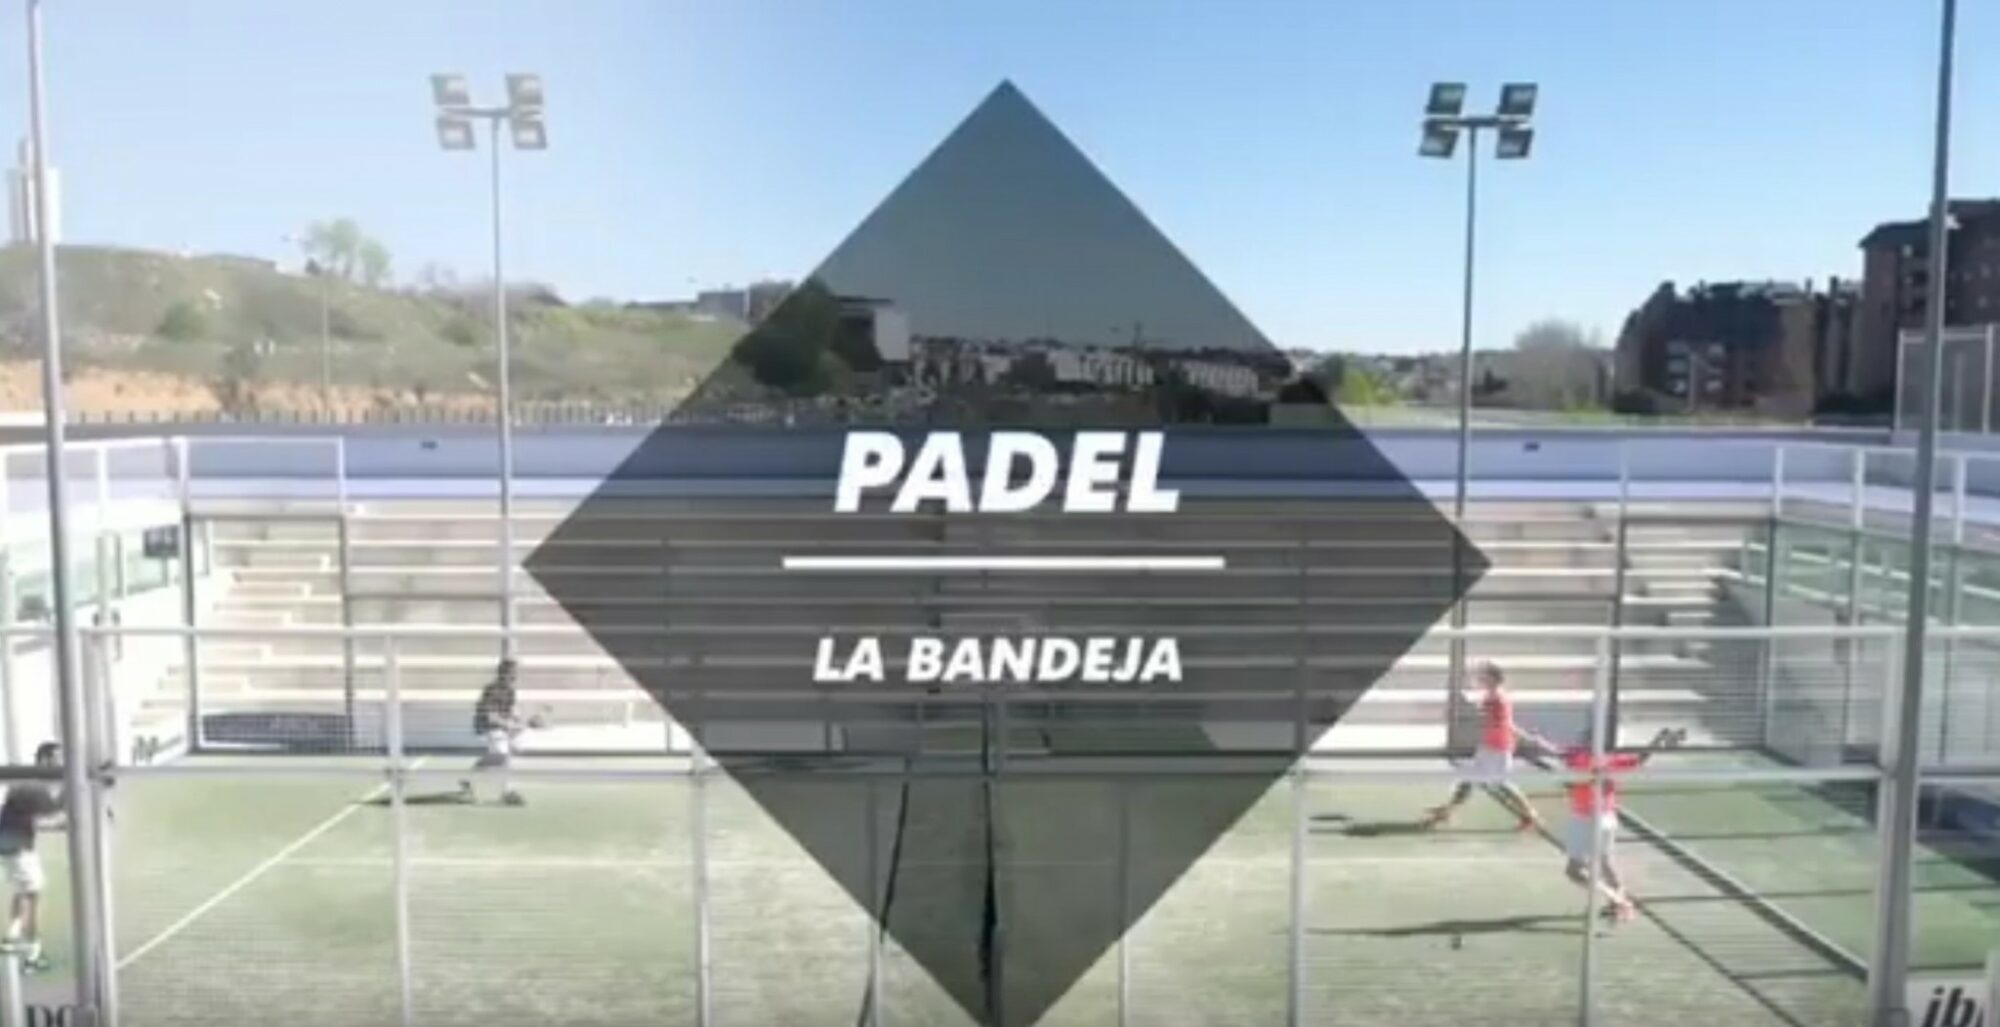 La Bandeja : Ét skud udelukkende padel